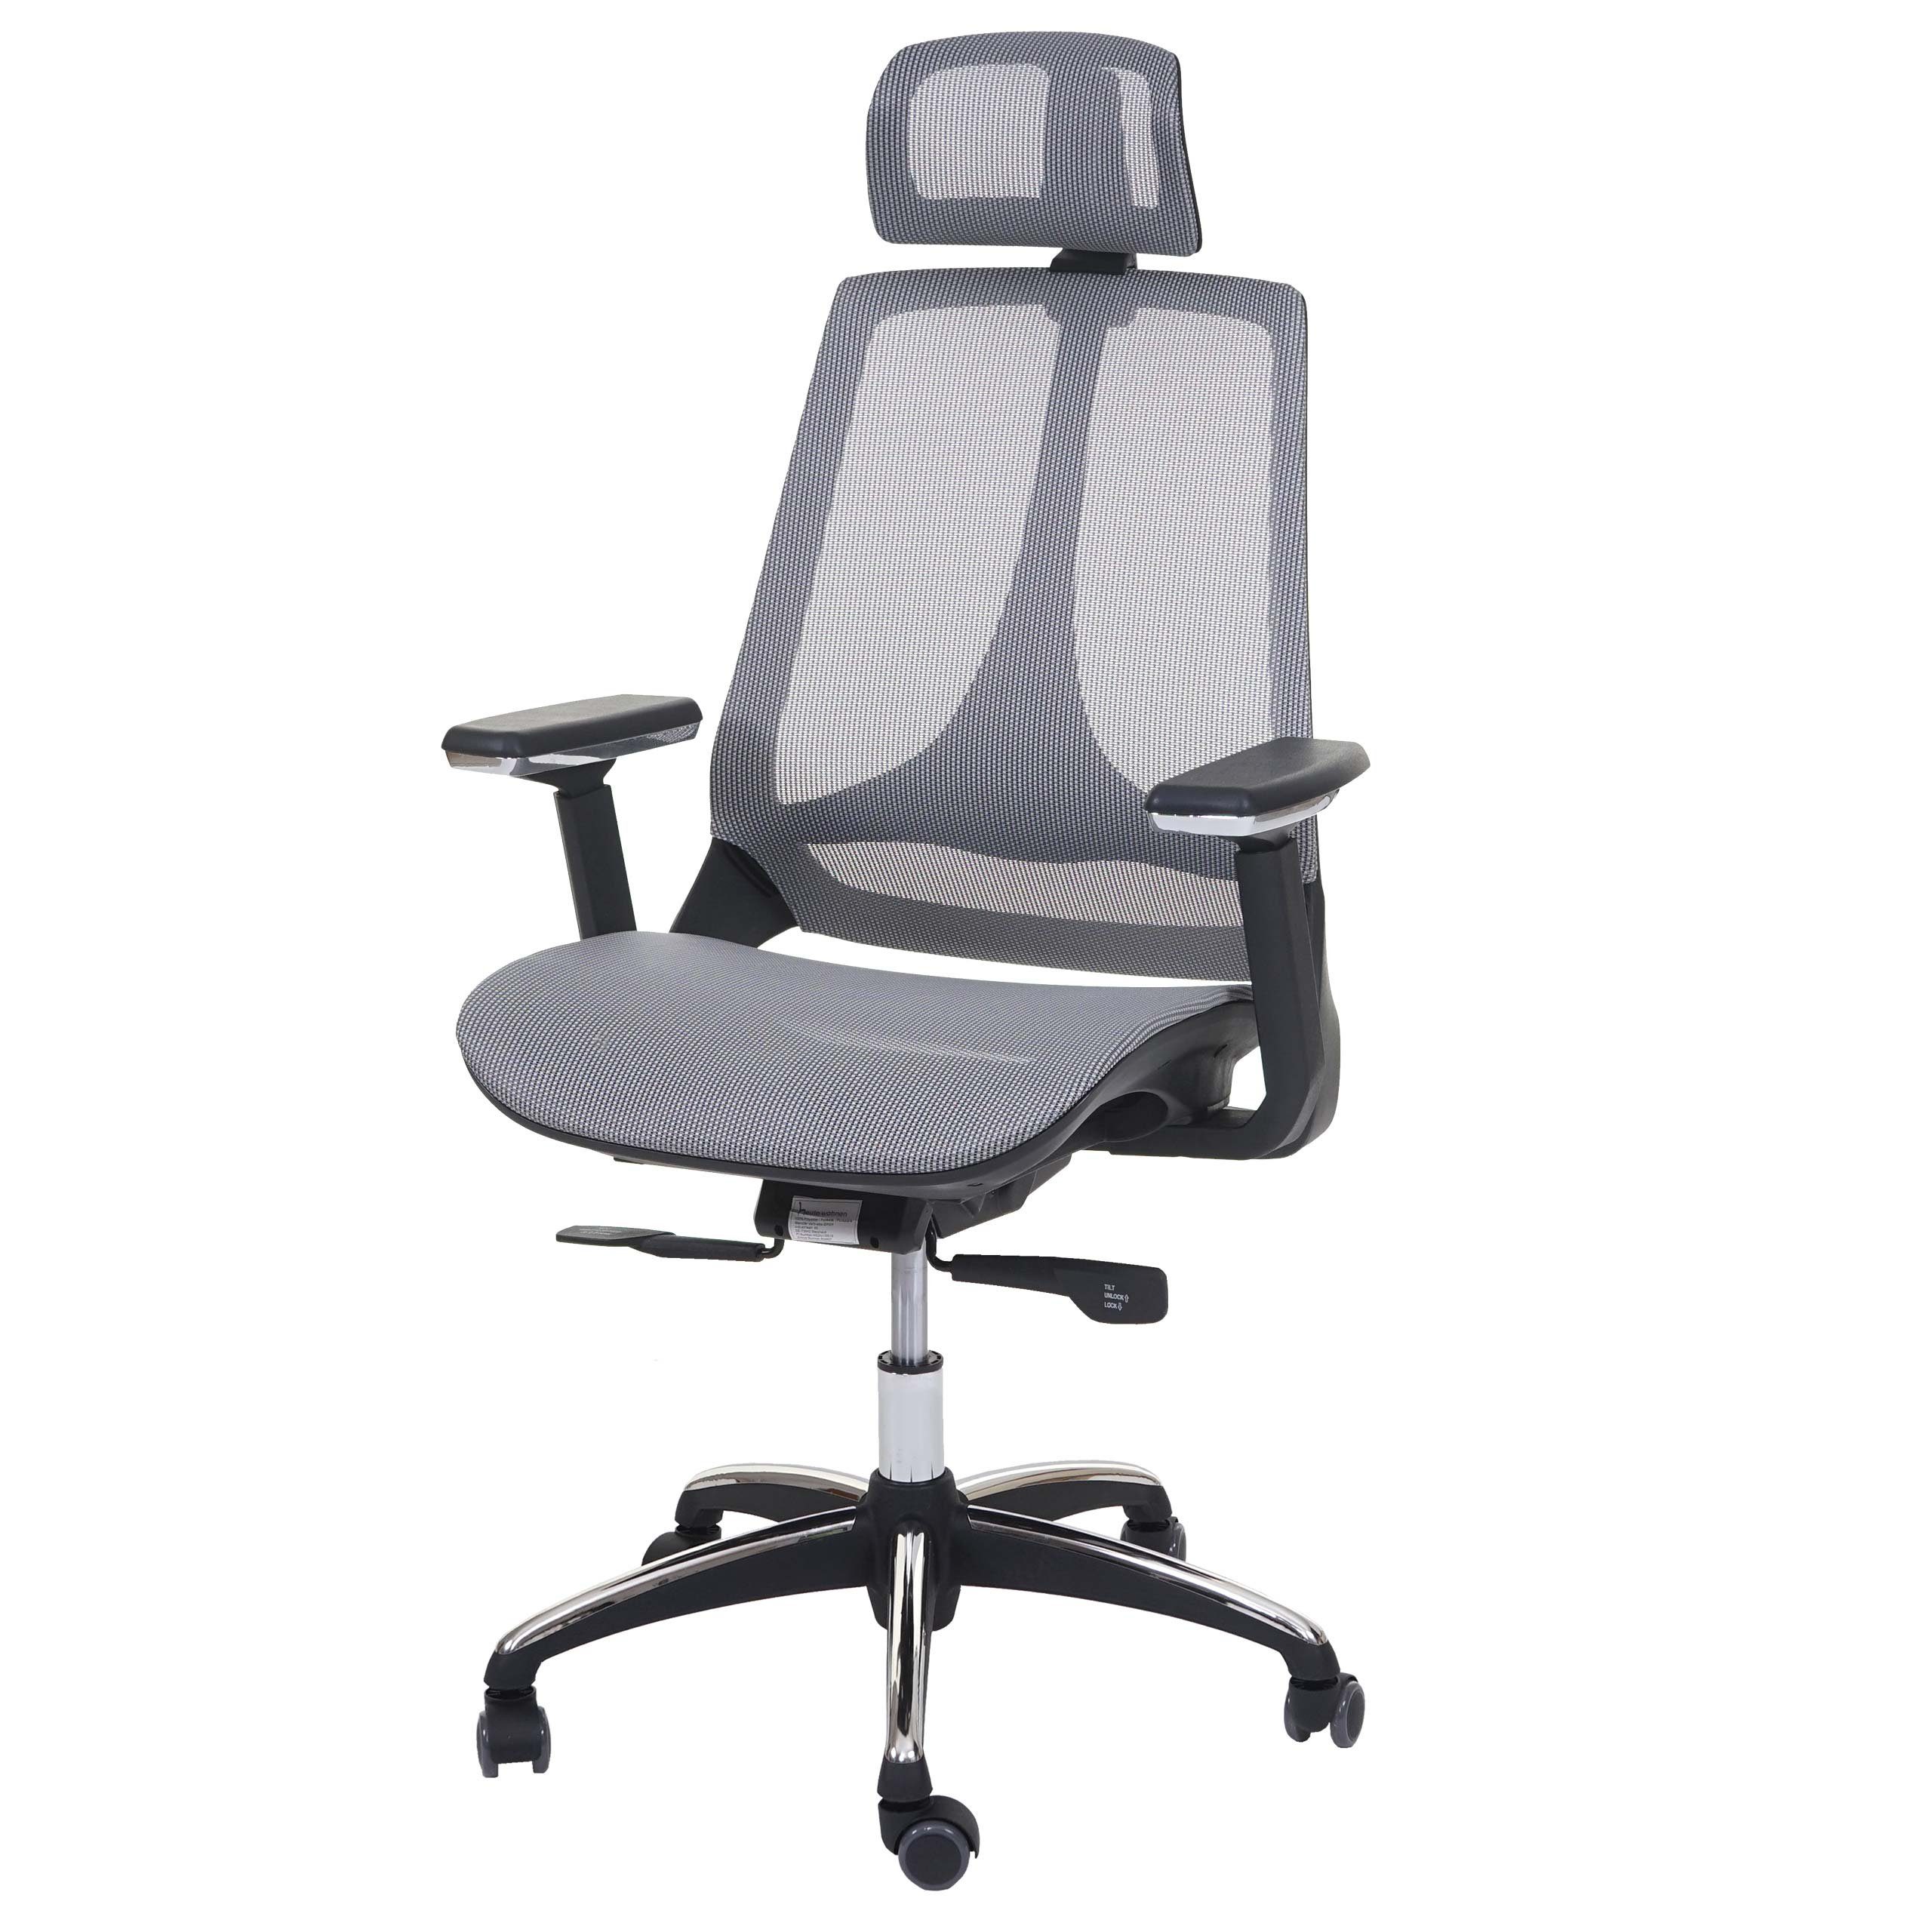 MCW Schreibtischstuhl MCW-A59, Höhenverstellbare Kopfstütze, tiefenverstellbare Sitzfläche grau